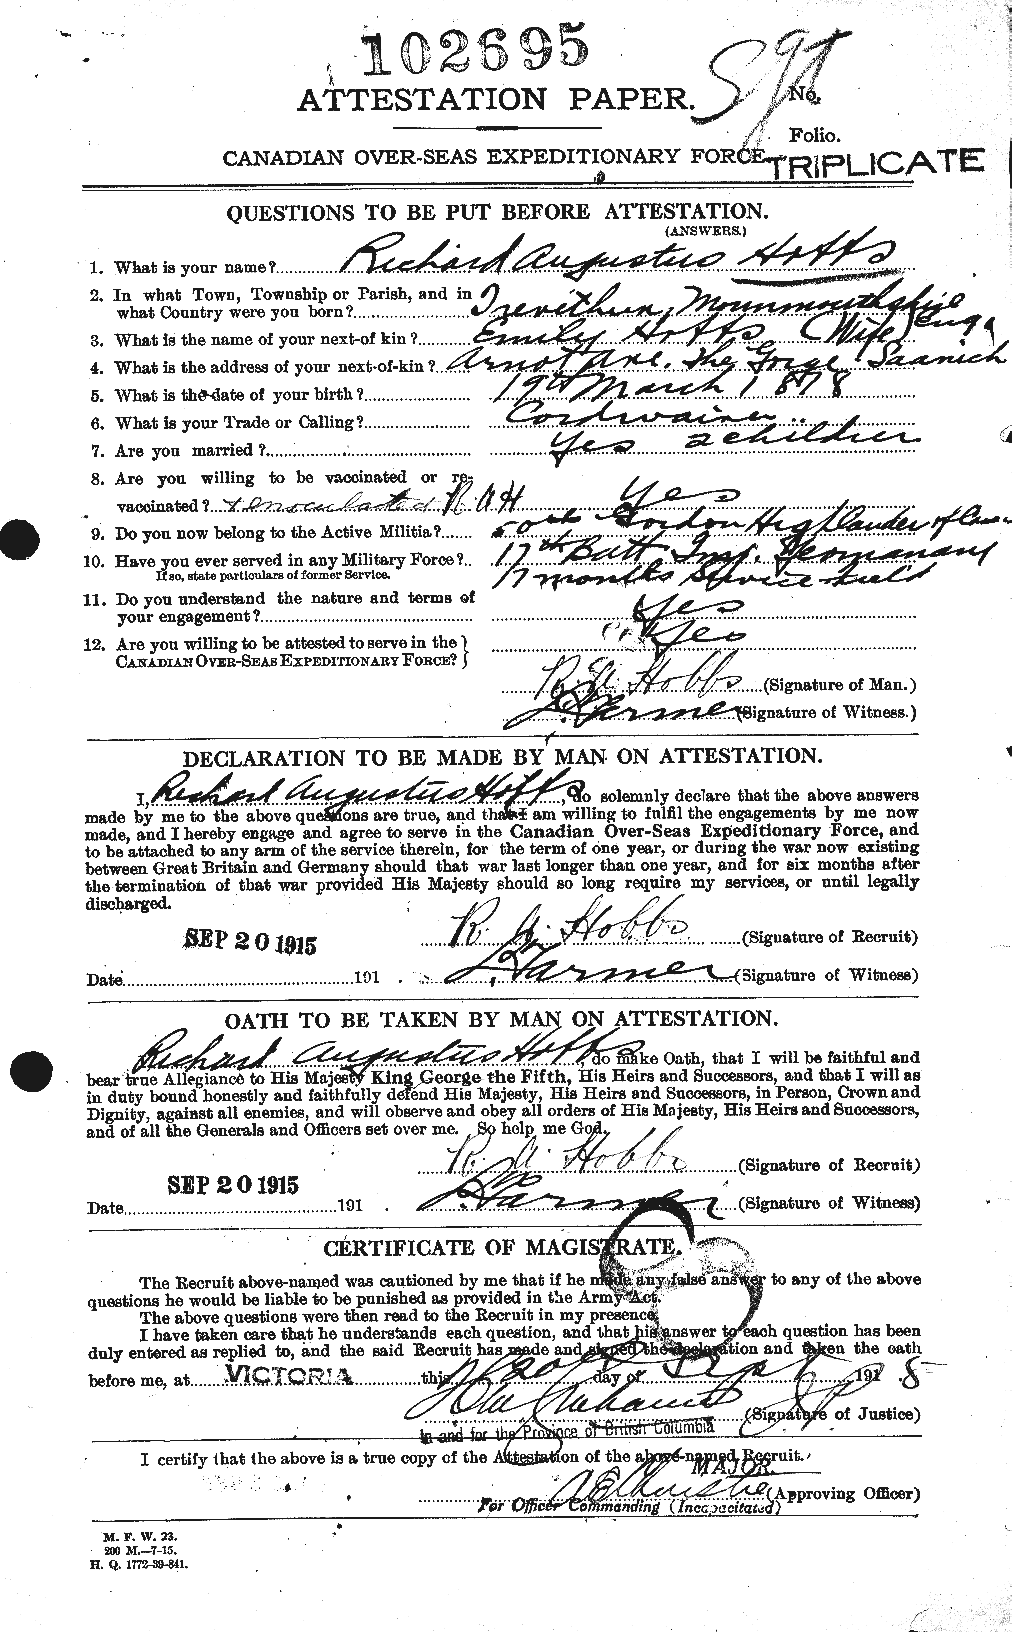 Dossiers du Personnel de la Première Guerre mondiale - CEC 394996a